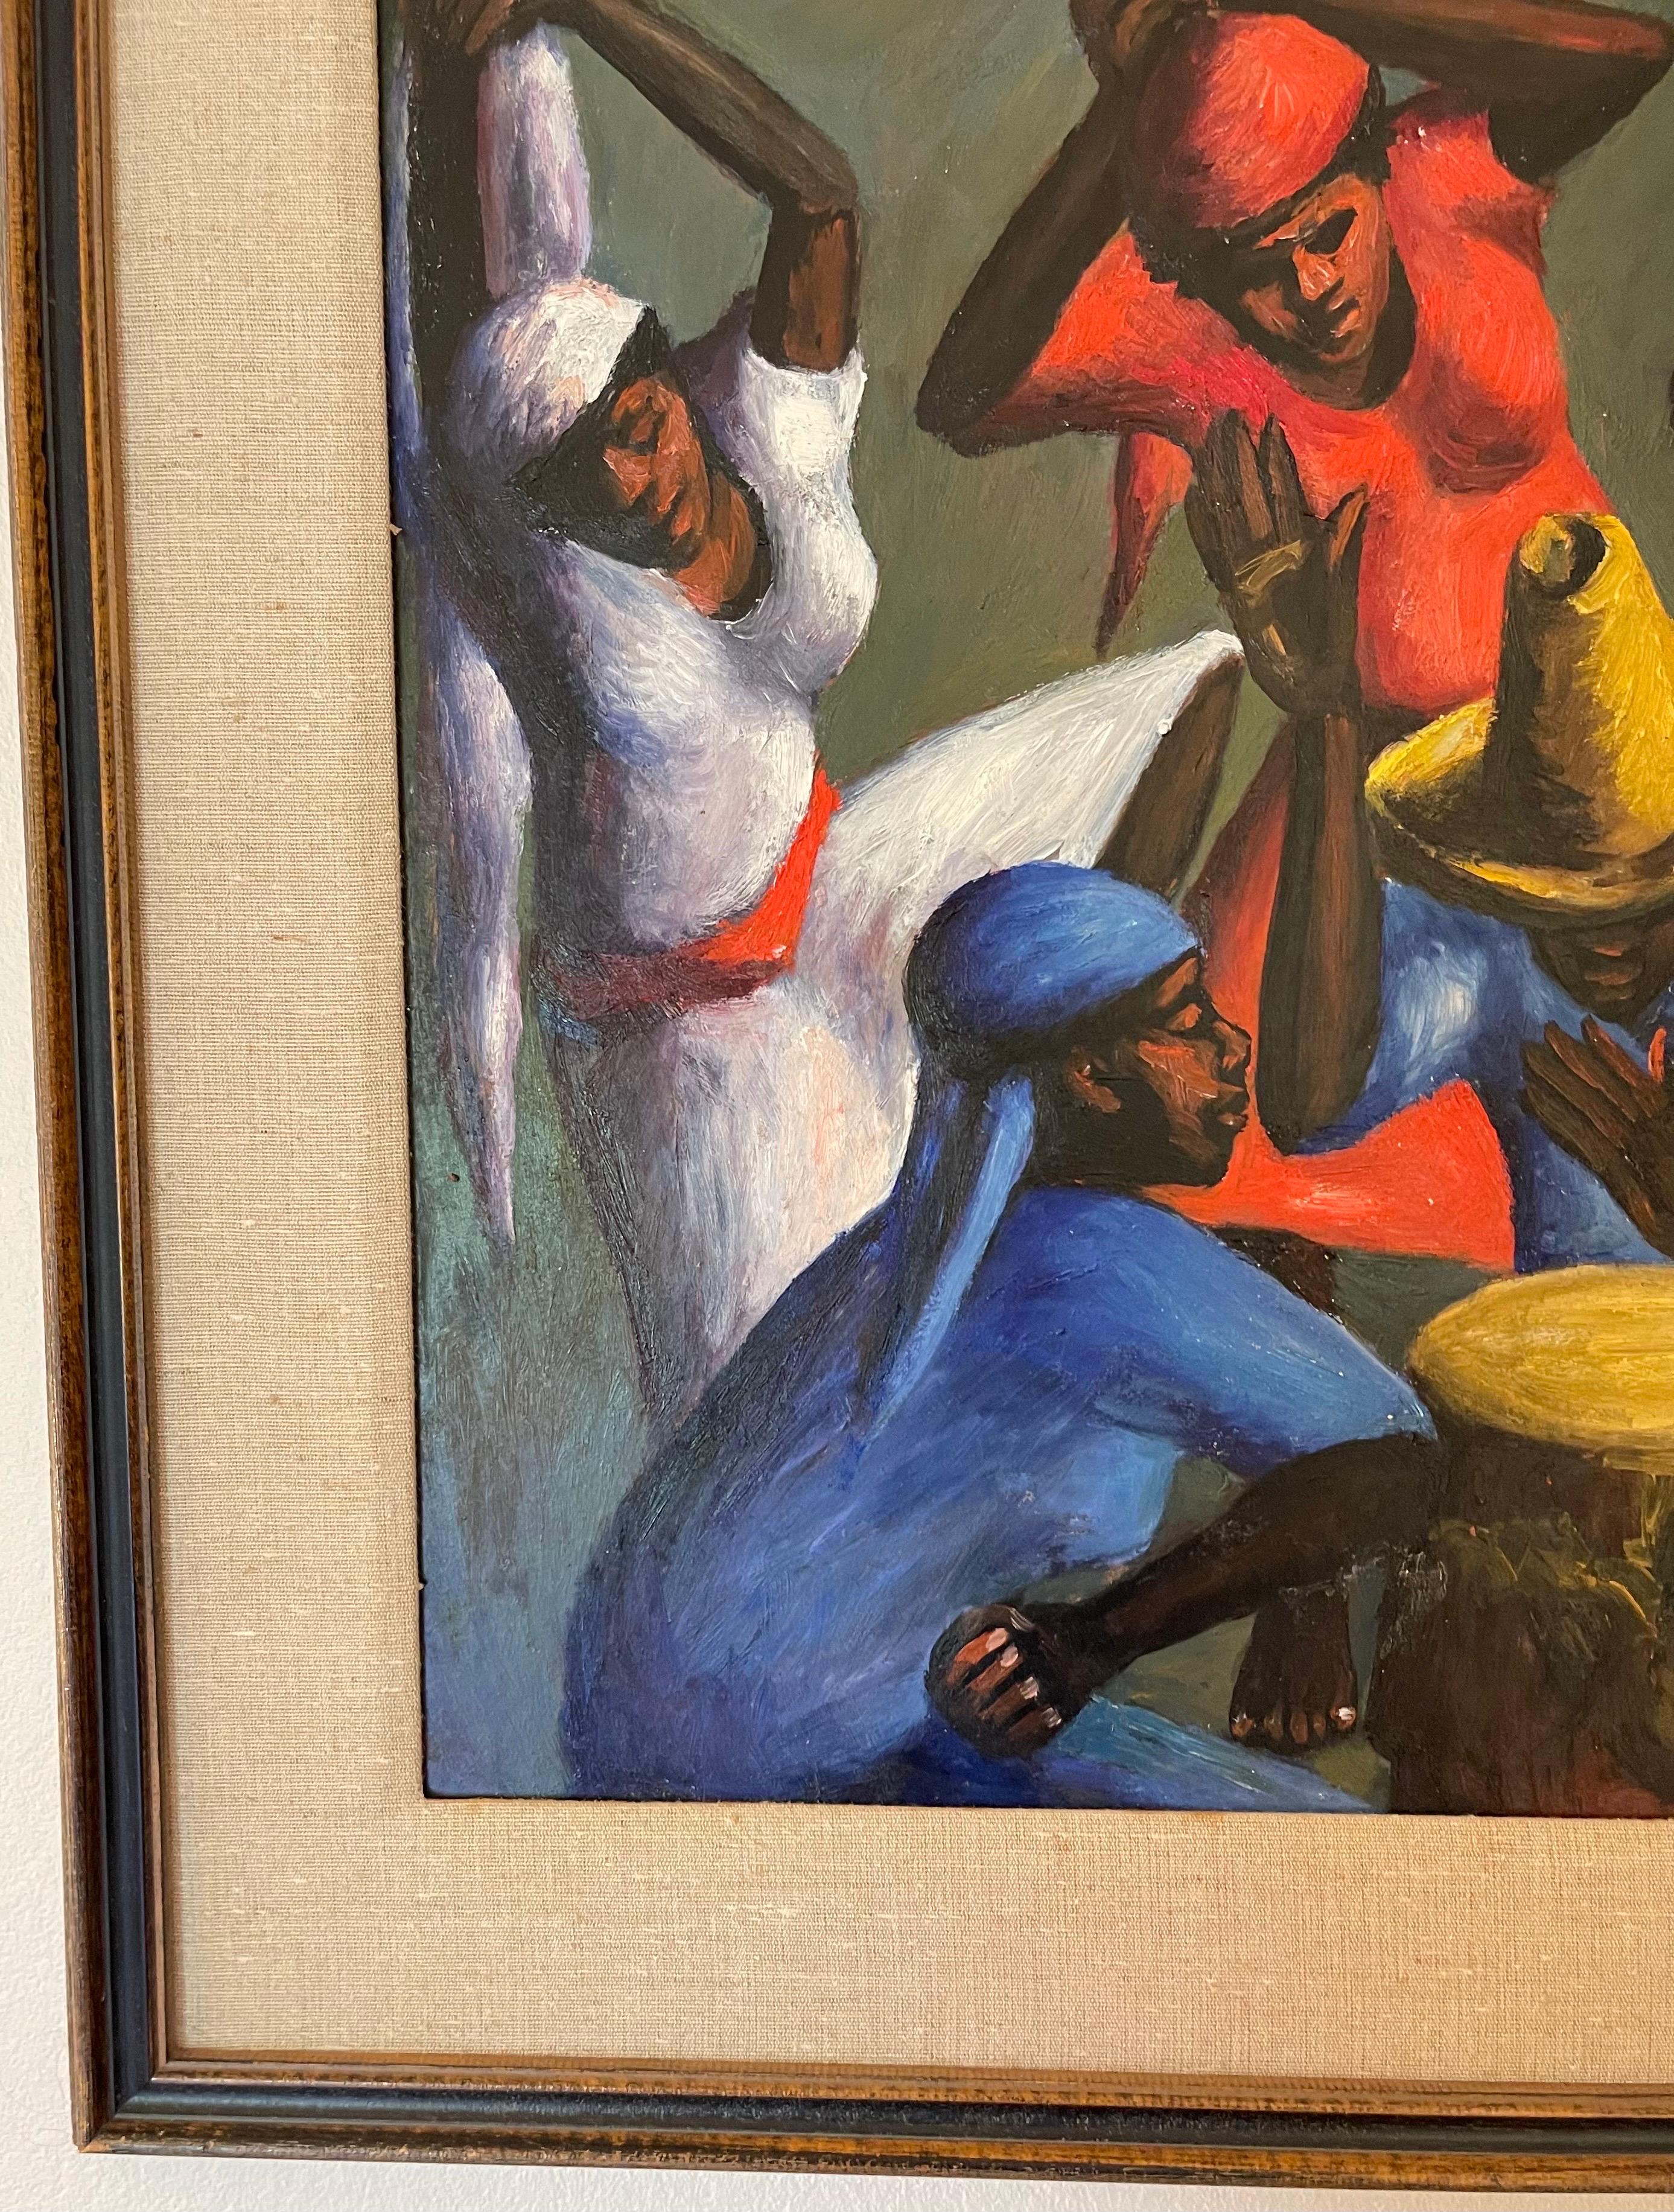 Peinture de Xaviar Amiana Dancers & Drummers de 1956. Huile sur planche. Cadre en bois tel qu'il a été trouvé. Acheté directement à l'artiste en 1956 à Port Au Prince, Haïti, par un diplomate américain. 
Le cadre mesure 32